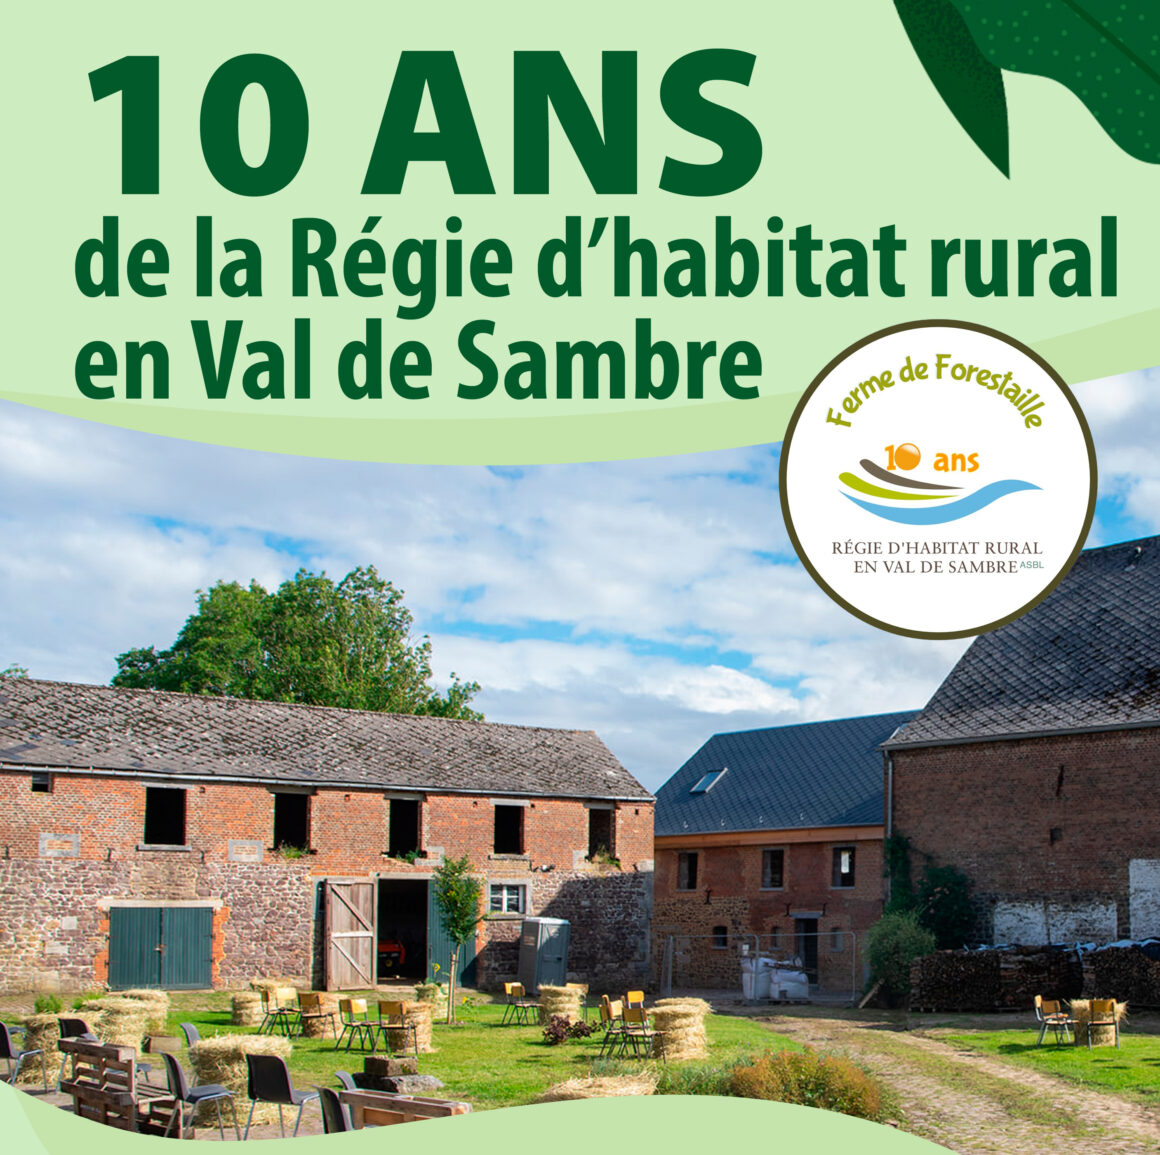 10 ans de la Régie d’habitat rural en Val de Sambre